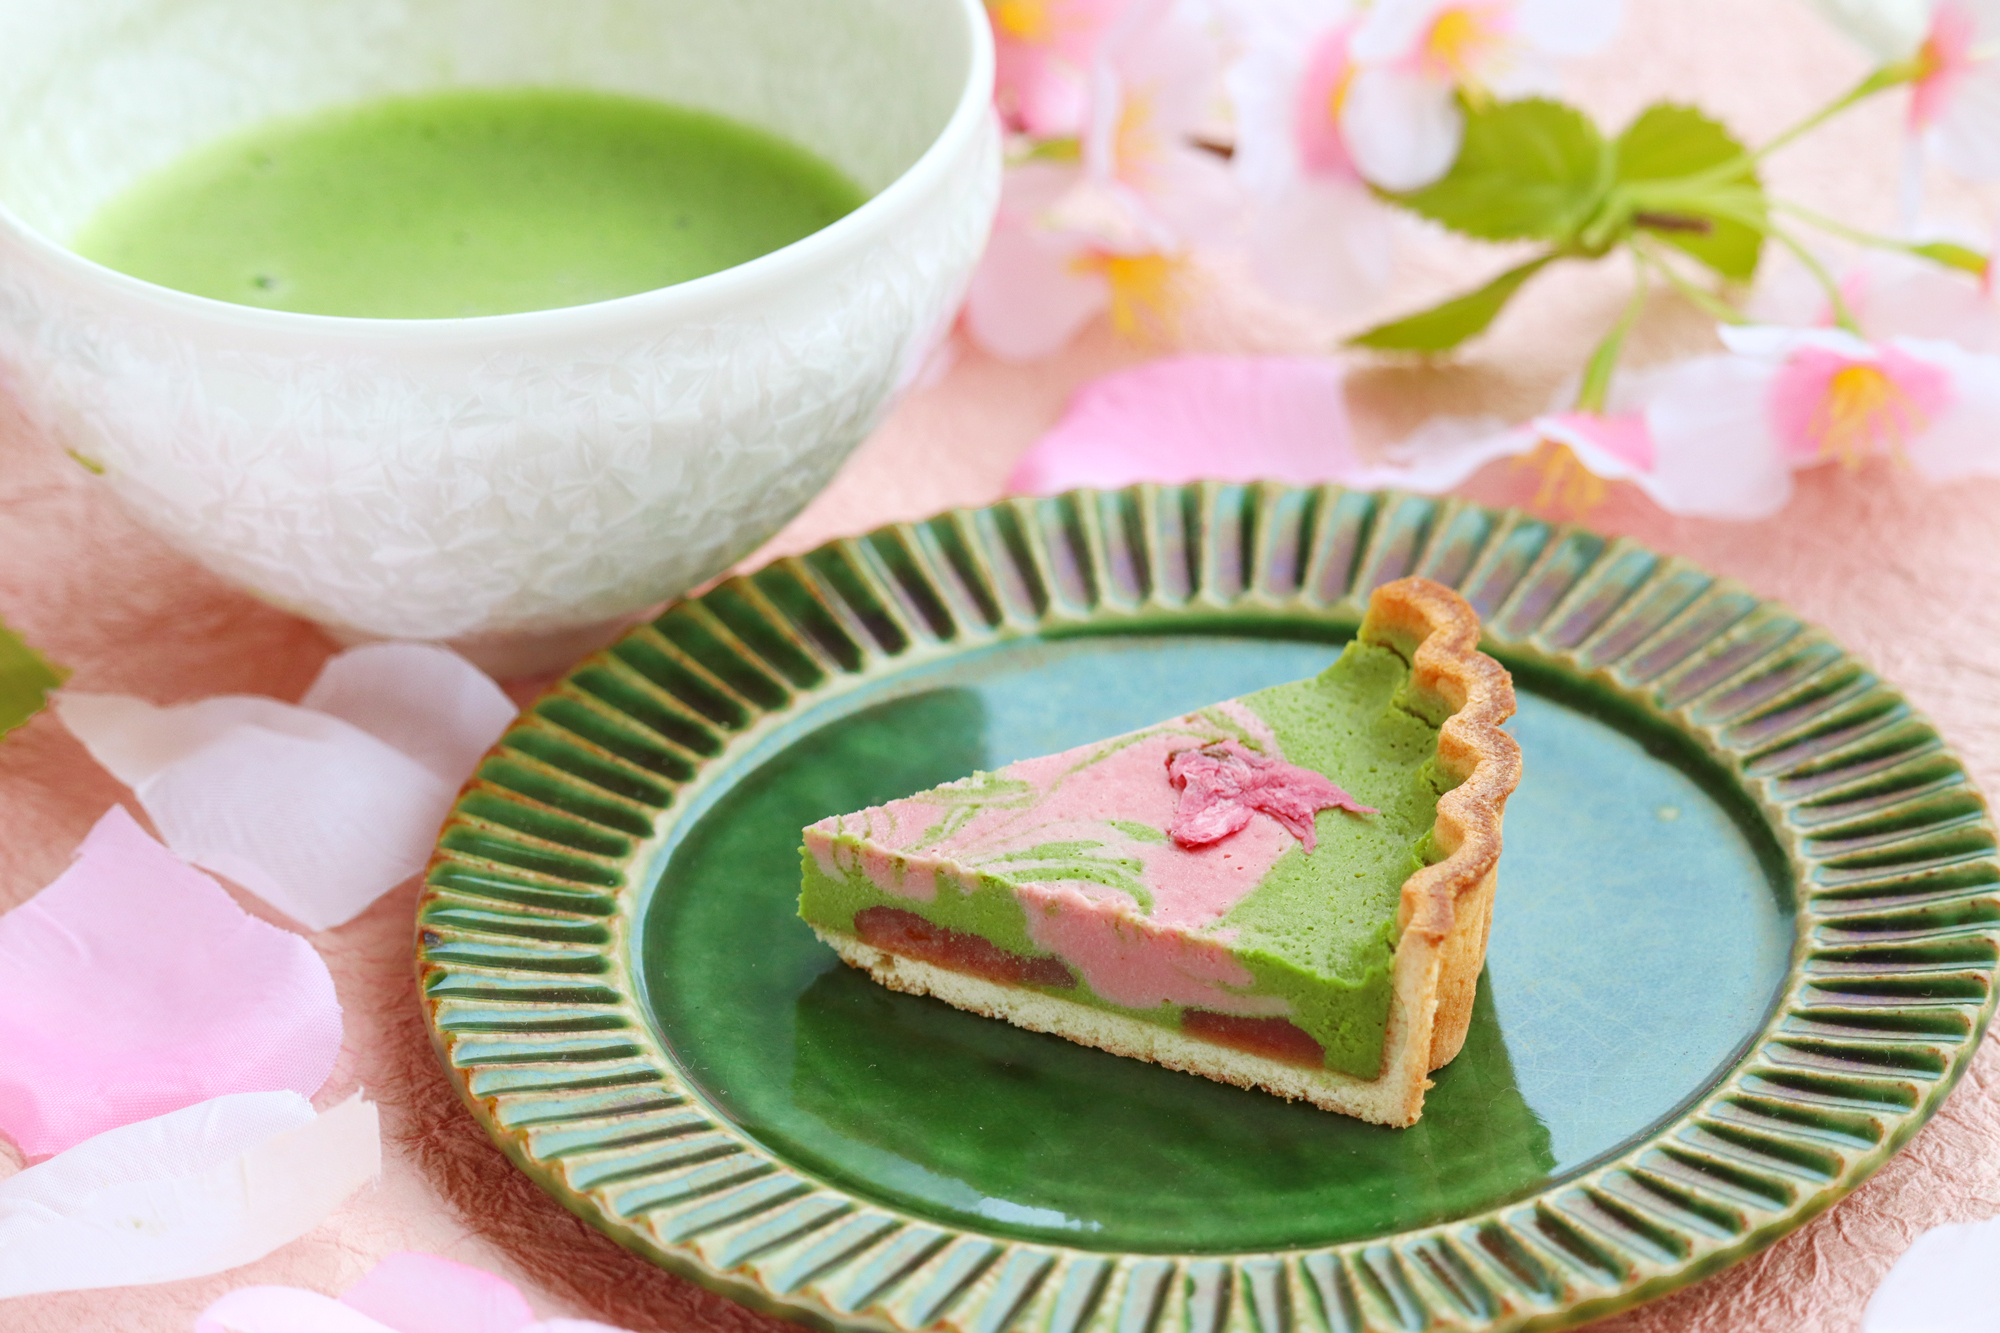 本格抹茶と桜で楽しむ春「さくらマーブル抹茶チーズケーキ」のオンラインお取り寄せ販売を3月18日より開始｜D-matcha株式会社のプレスリリース